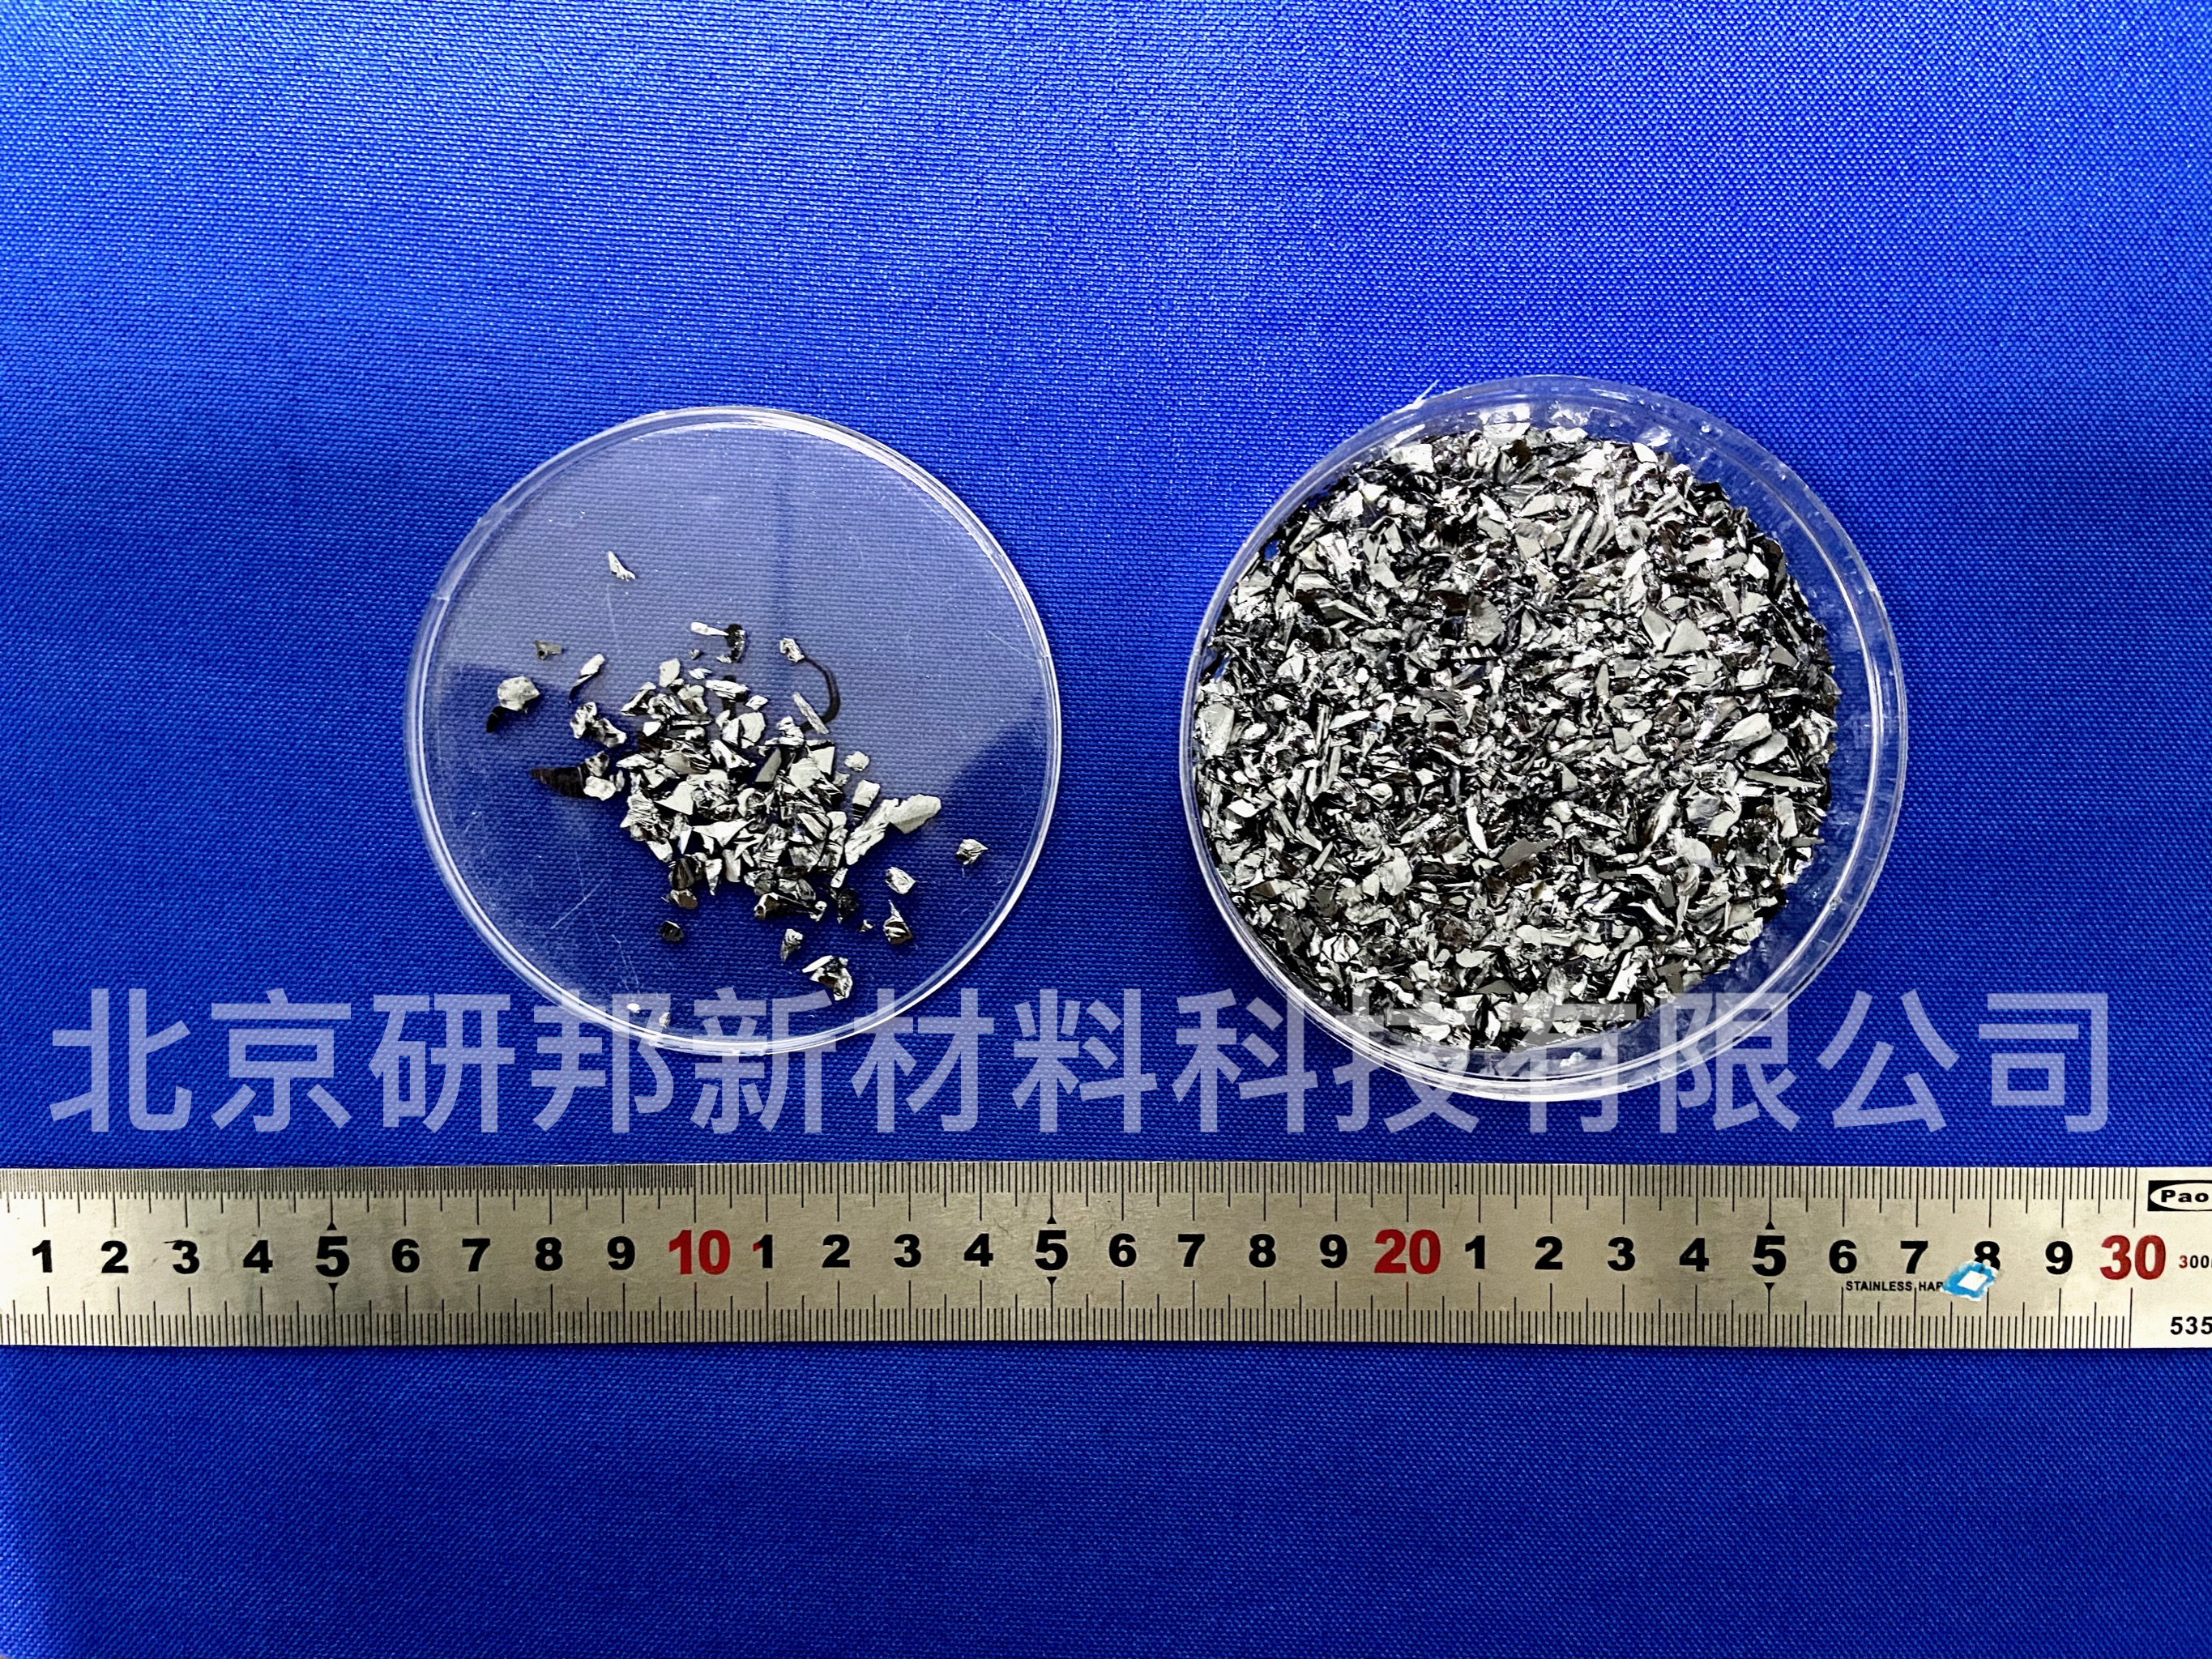 北京市专业供应高纯硅颗粒、硅合金、磁控厂家专业供应高纯硅颗粒、硅合金、磁控溅射硅靶材